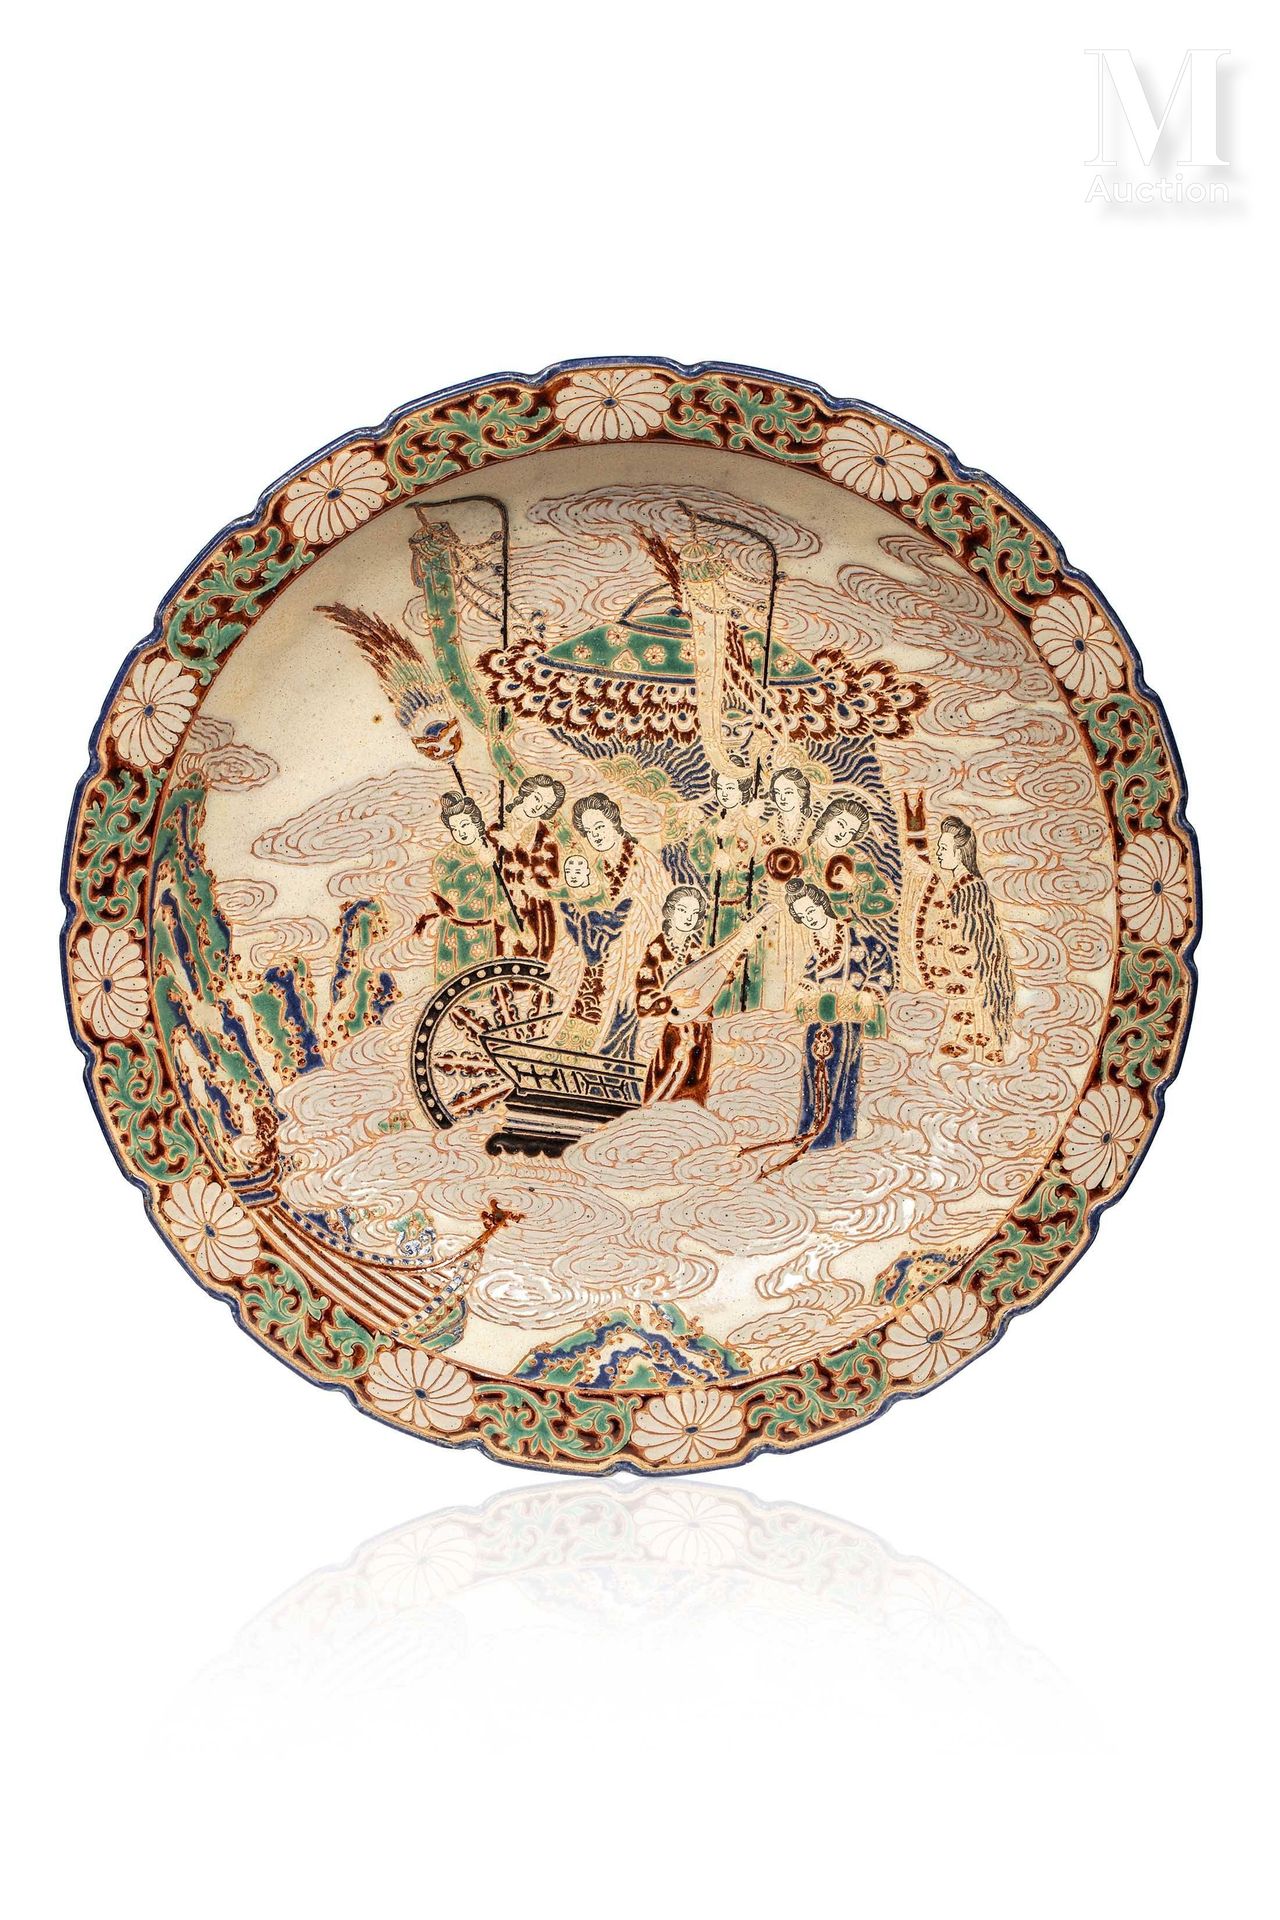 VIETNAM, Ecole de Bien Hoa, XXe siècle, Important plat en céramique decorado con&hellip;